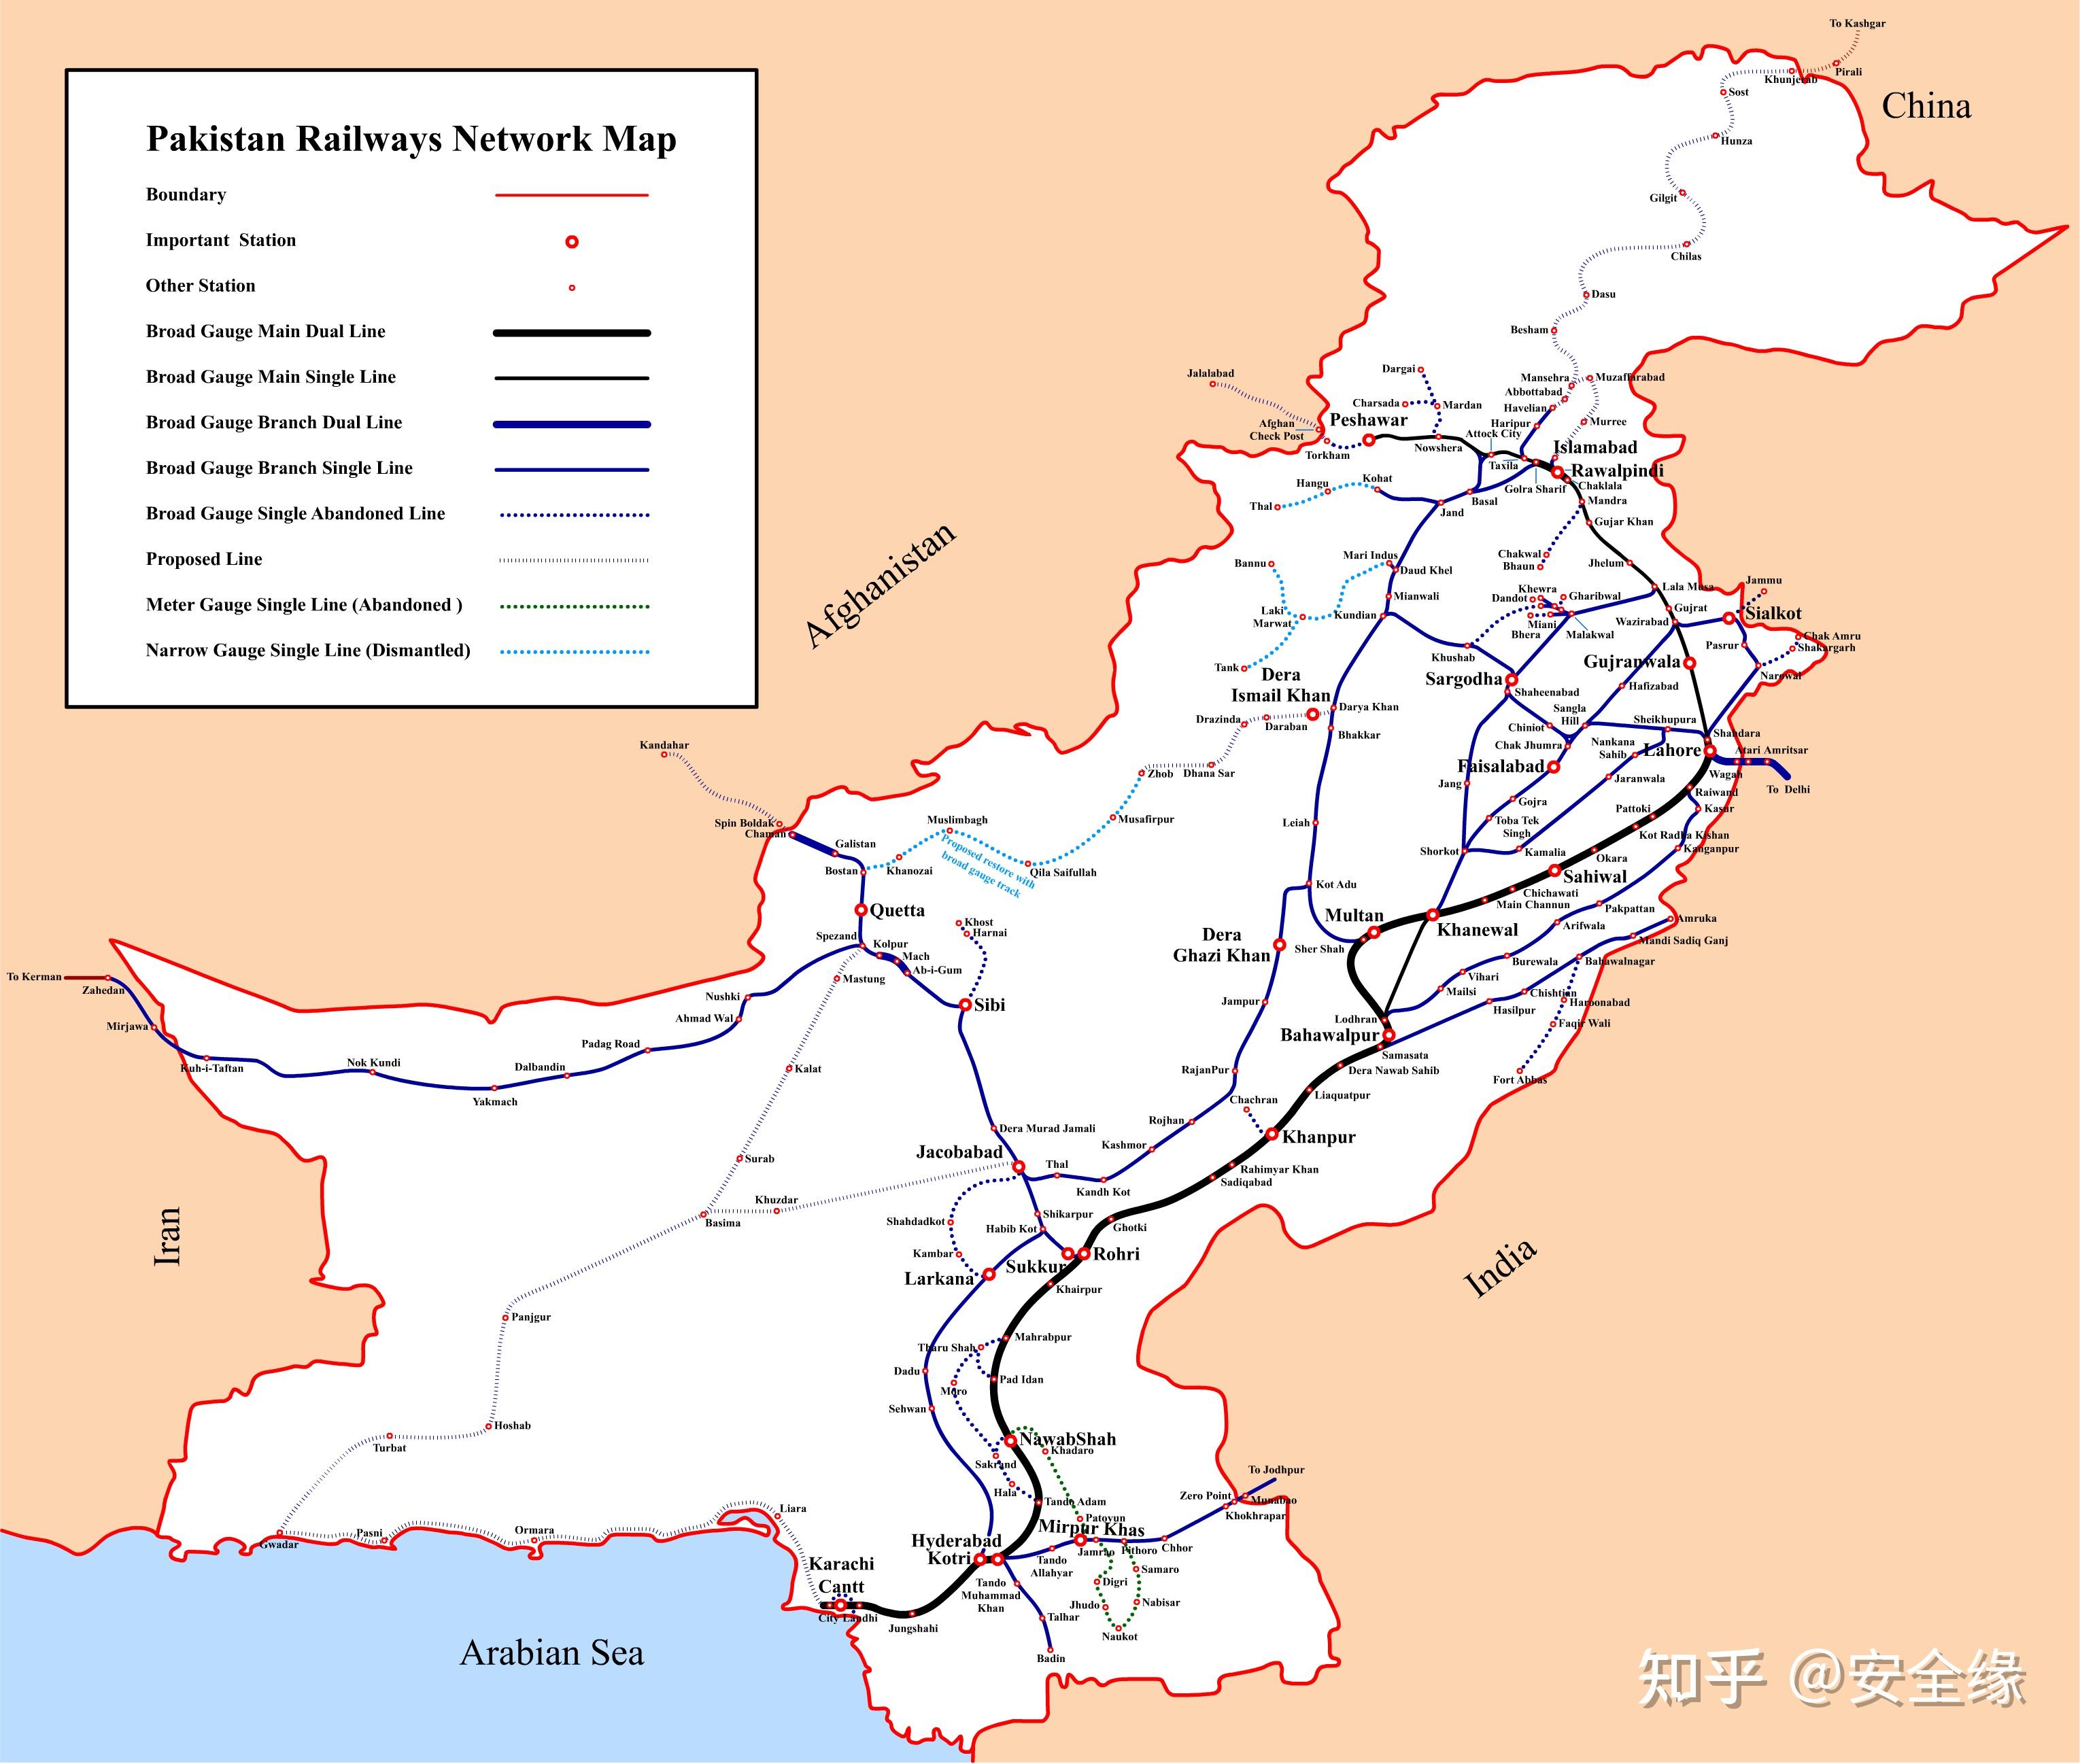 巴基斯坦 铁路线路图巴基斯坦1号铁路干线(ml1)从卡拉奇向北经拉合尔